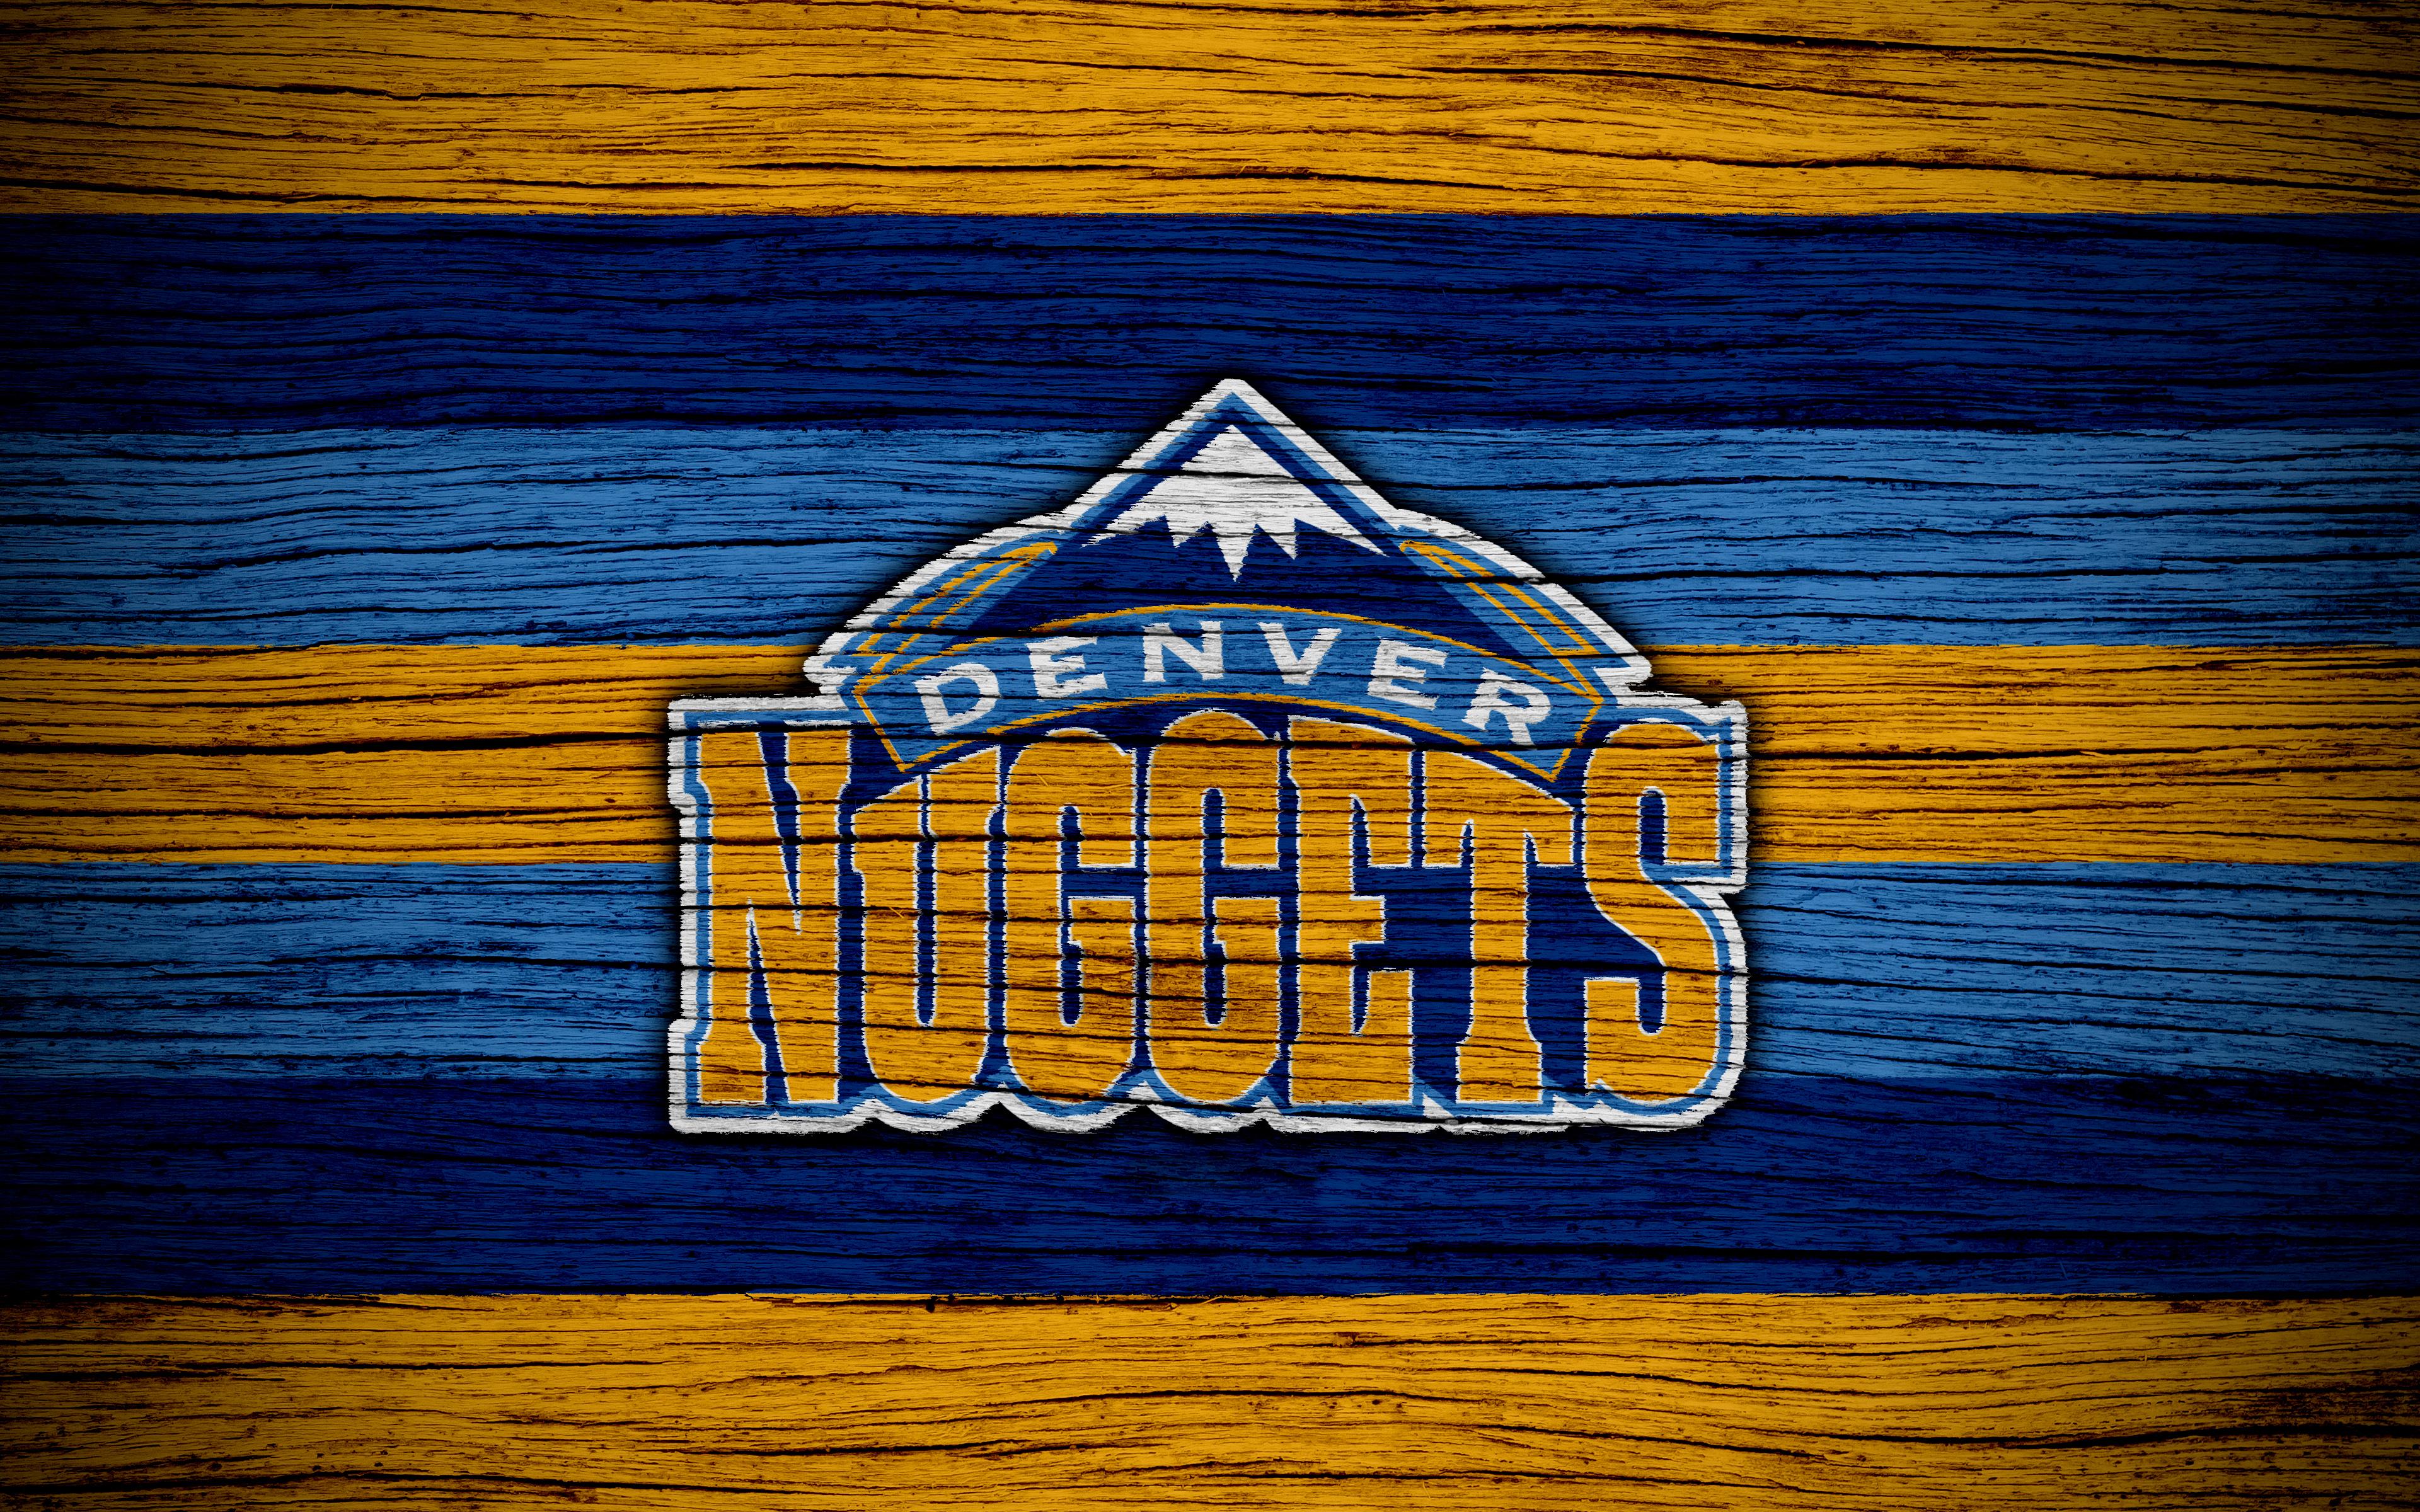 Denver Nuggets Logo 4k Ultra HD Wallpaper. Background Image